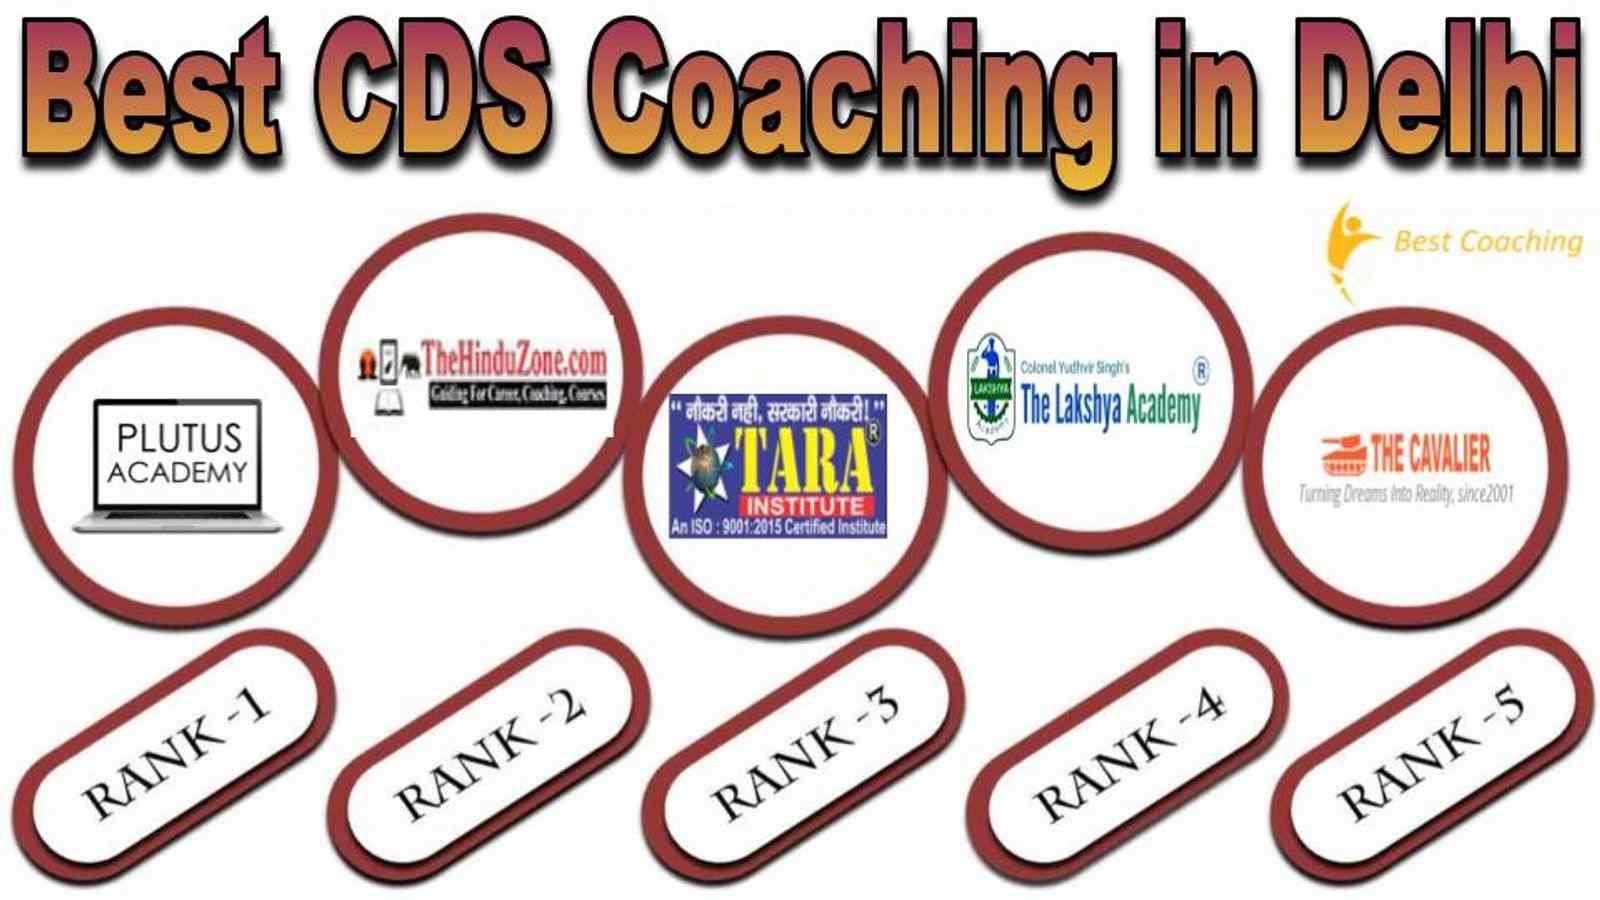 Best CDS Coaching in Delhi